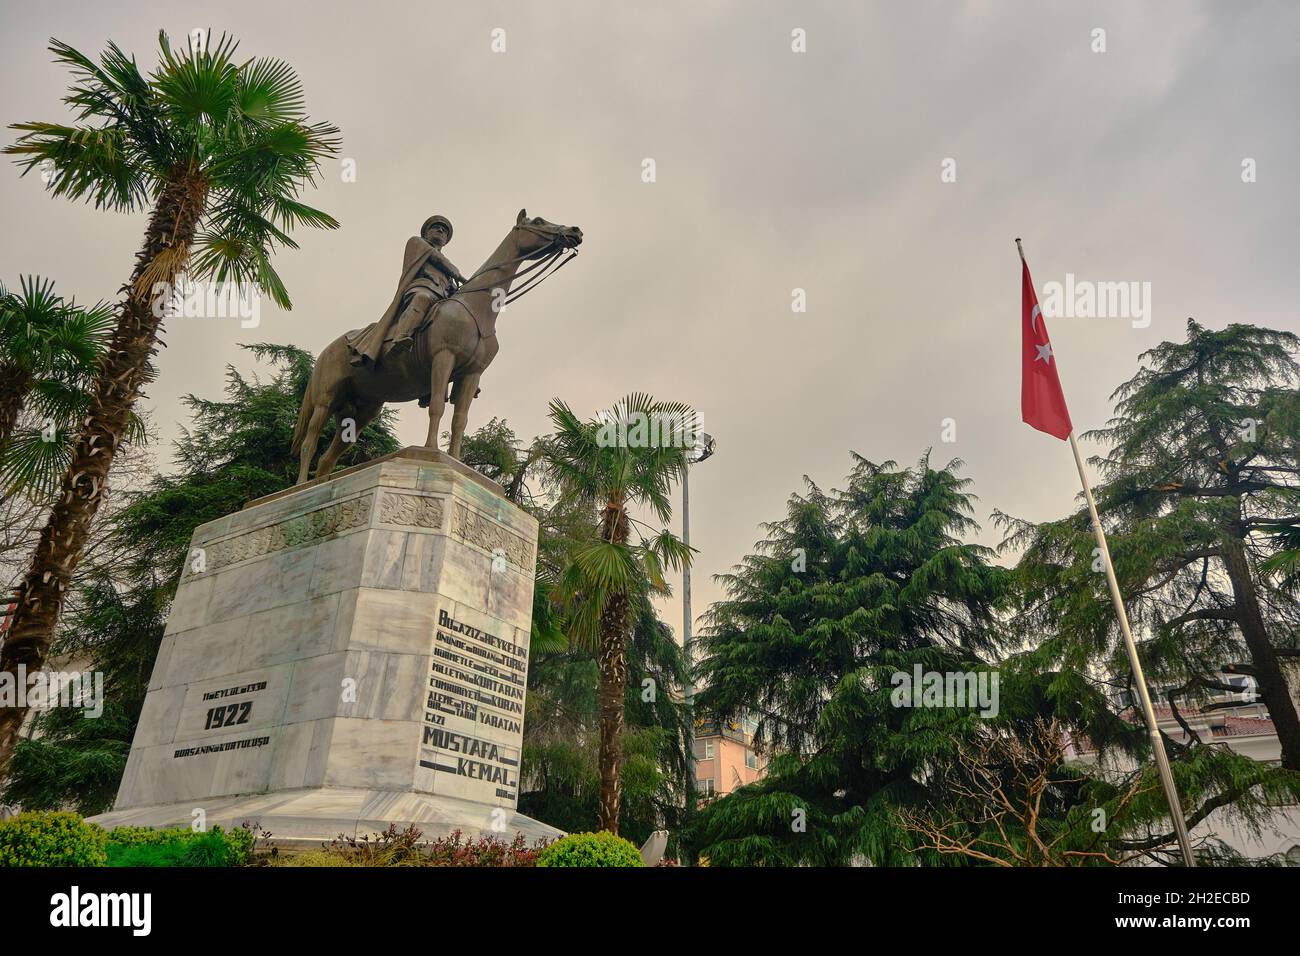 Ataturk fondatore della Repubblica Turca nel centro di Bursa (heykel) durante il tempo piovoso e coperto con bandiera turca e scultura ricoperta da alberi Foto Stock